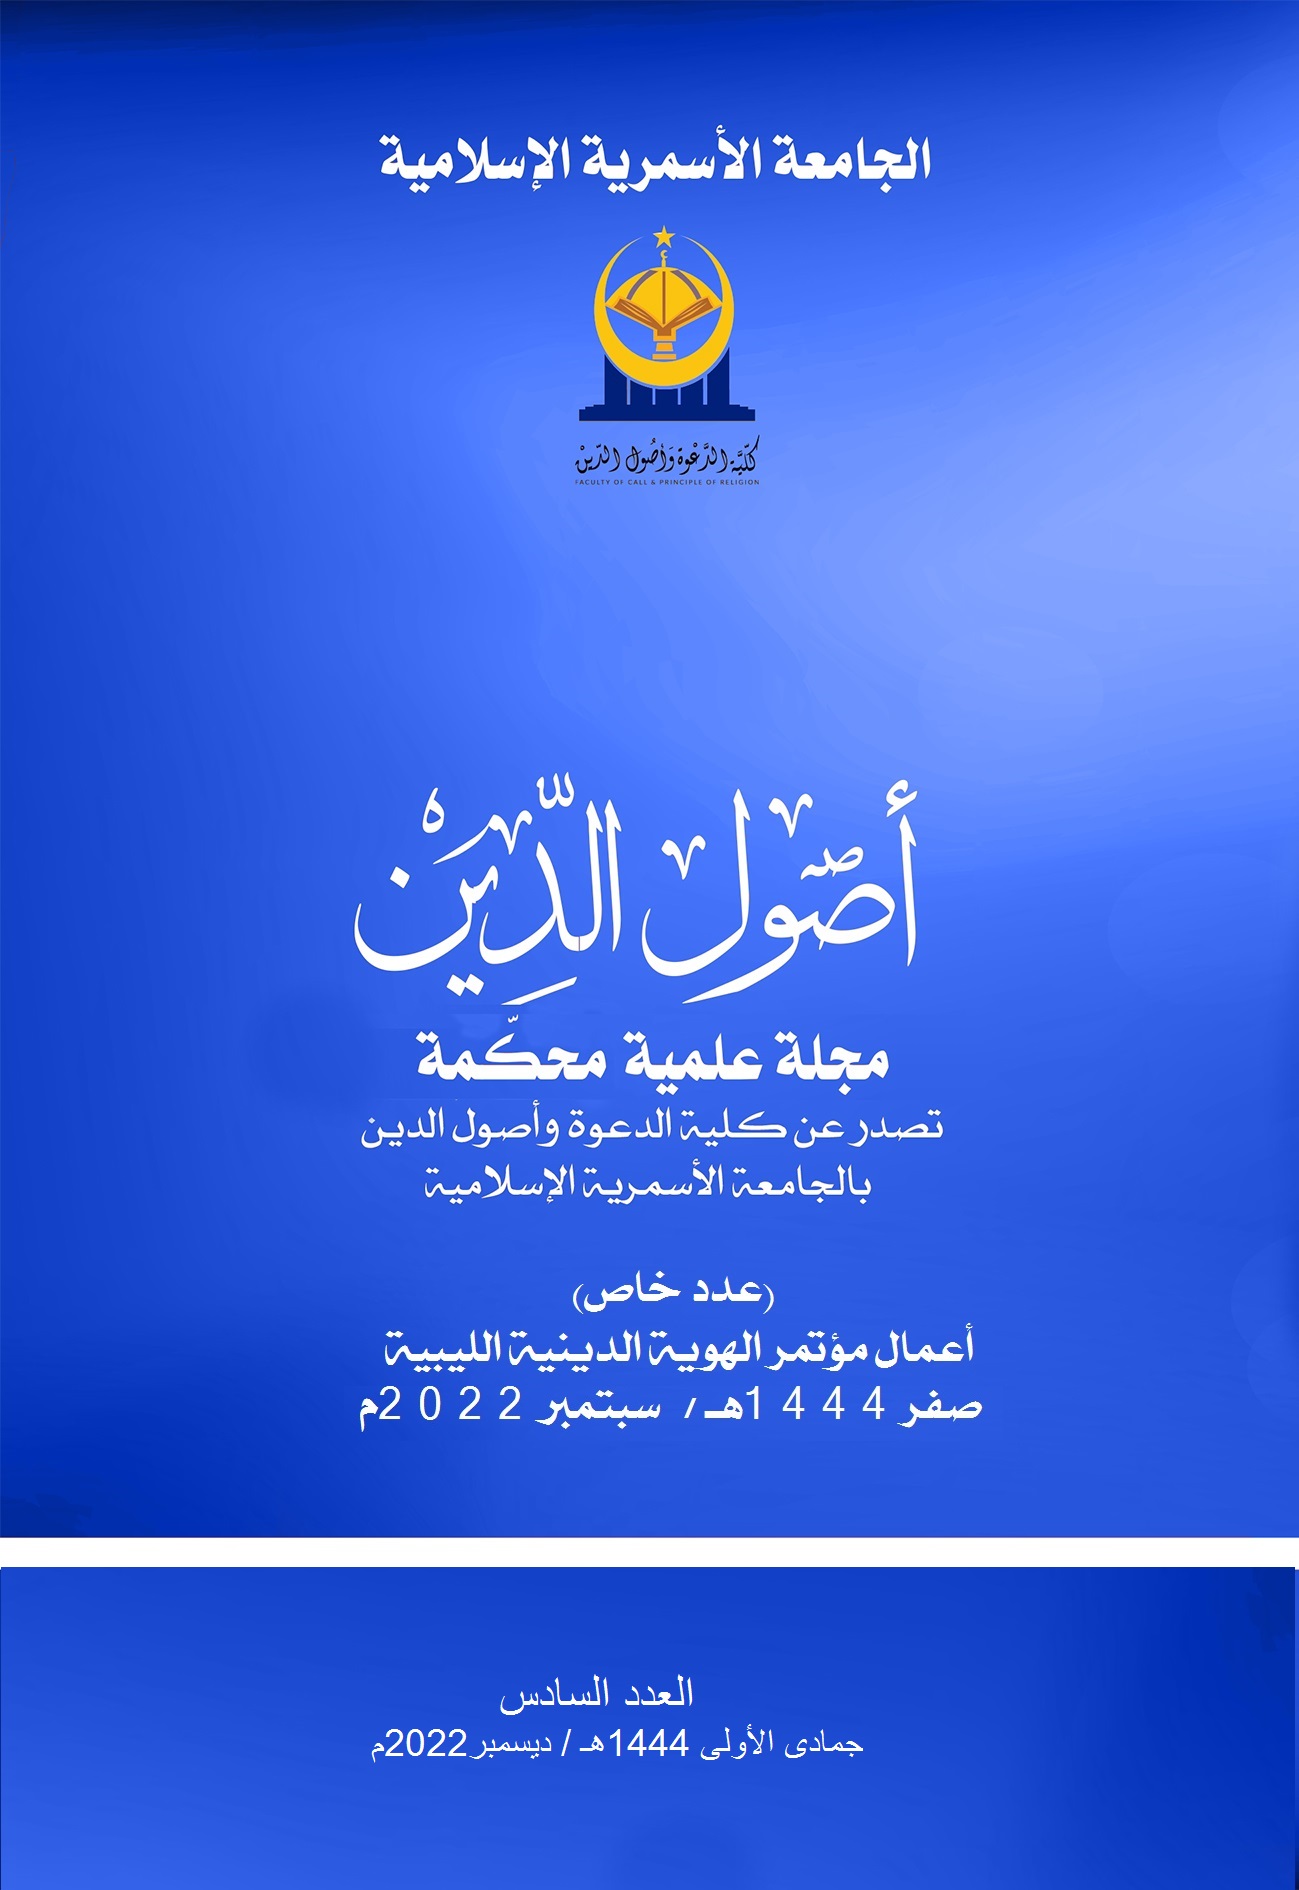                     معاينة المؤتمر العلمي الدولي: الهوية الدينيَّة الليبيَّة
                